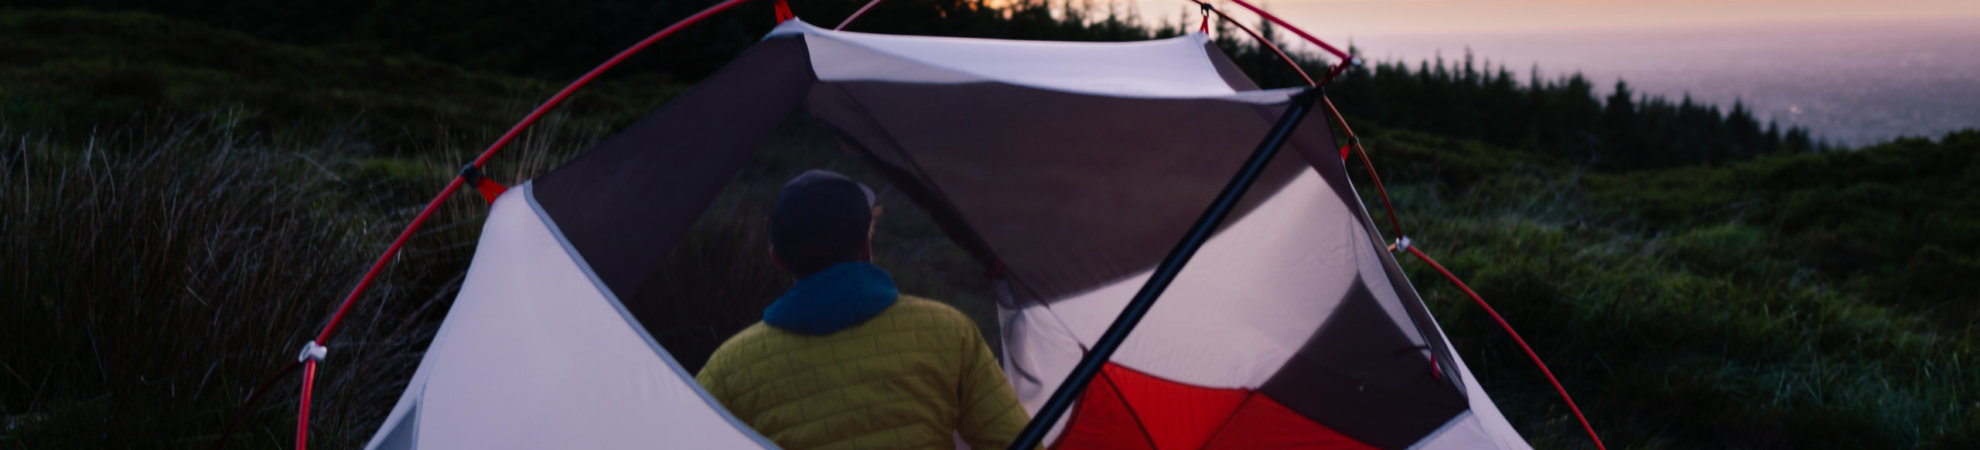 MSR Tent Camping